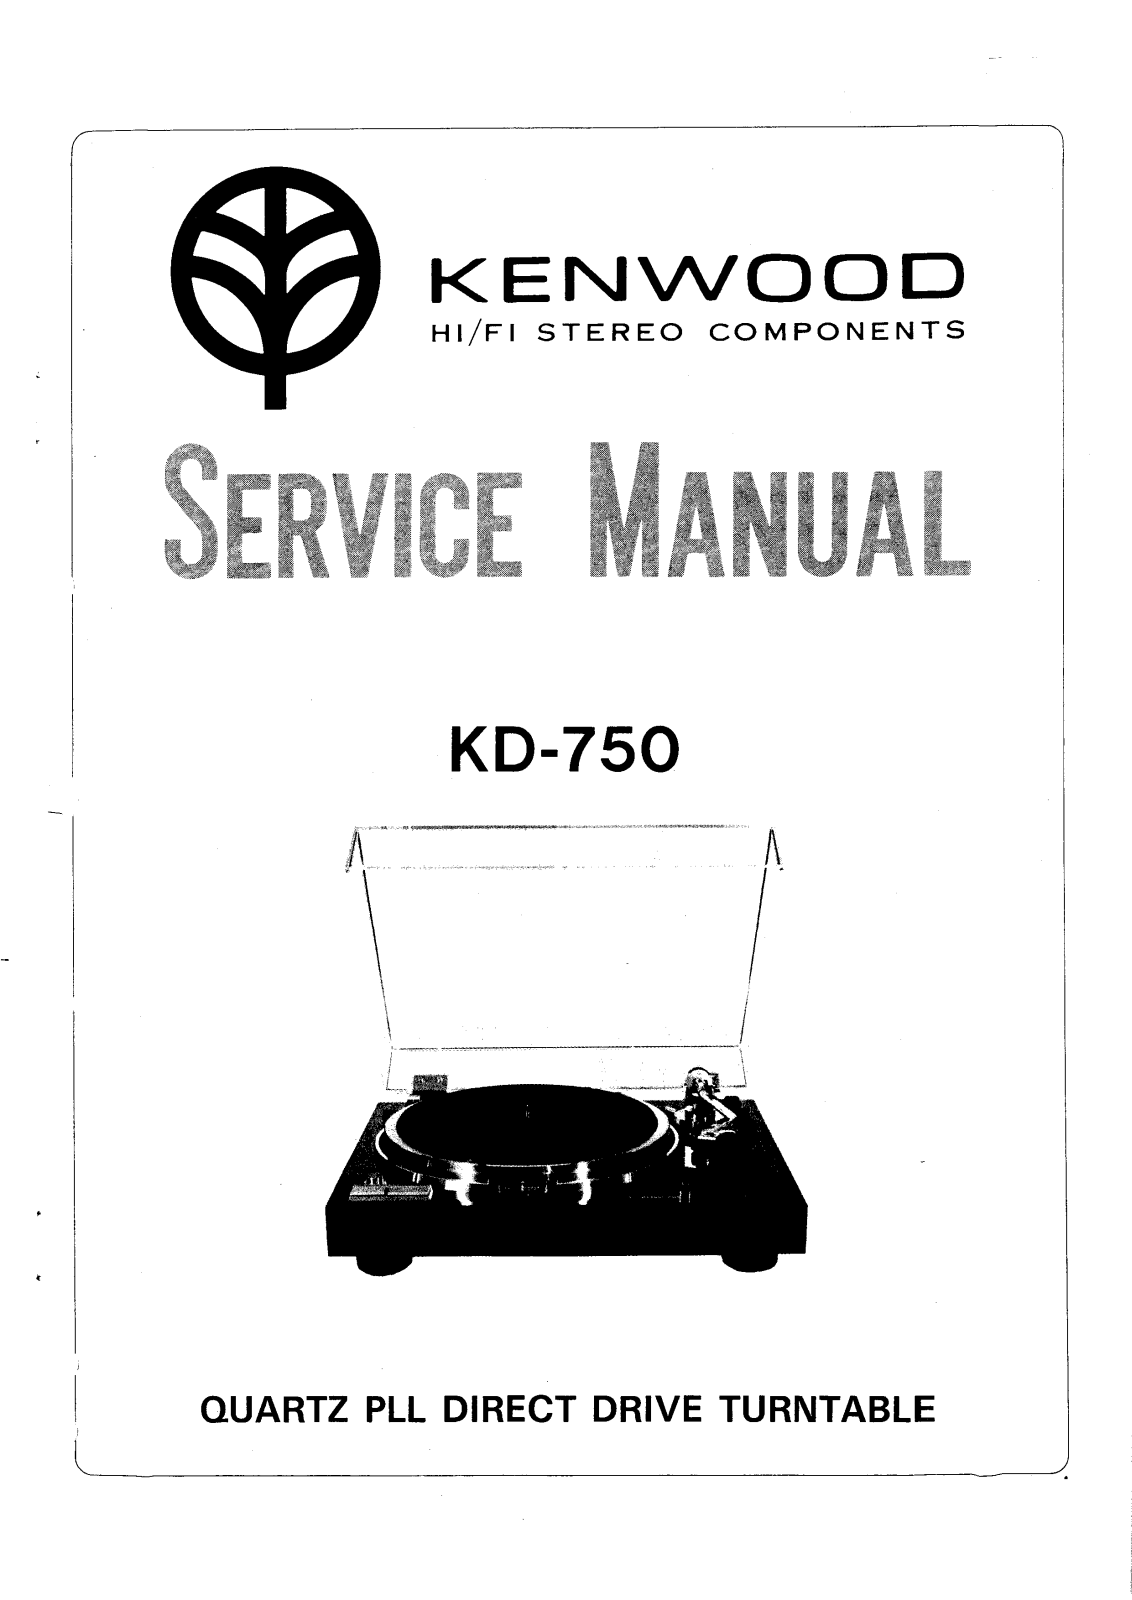 Kenwood KD-750 Service manual